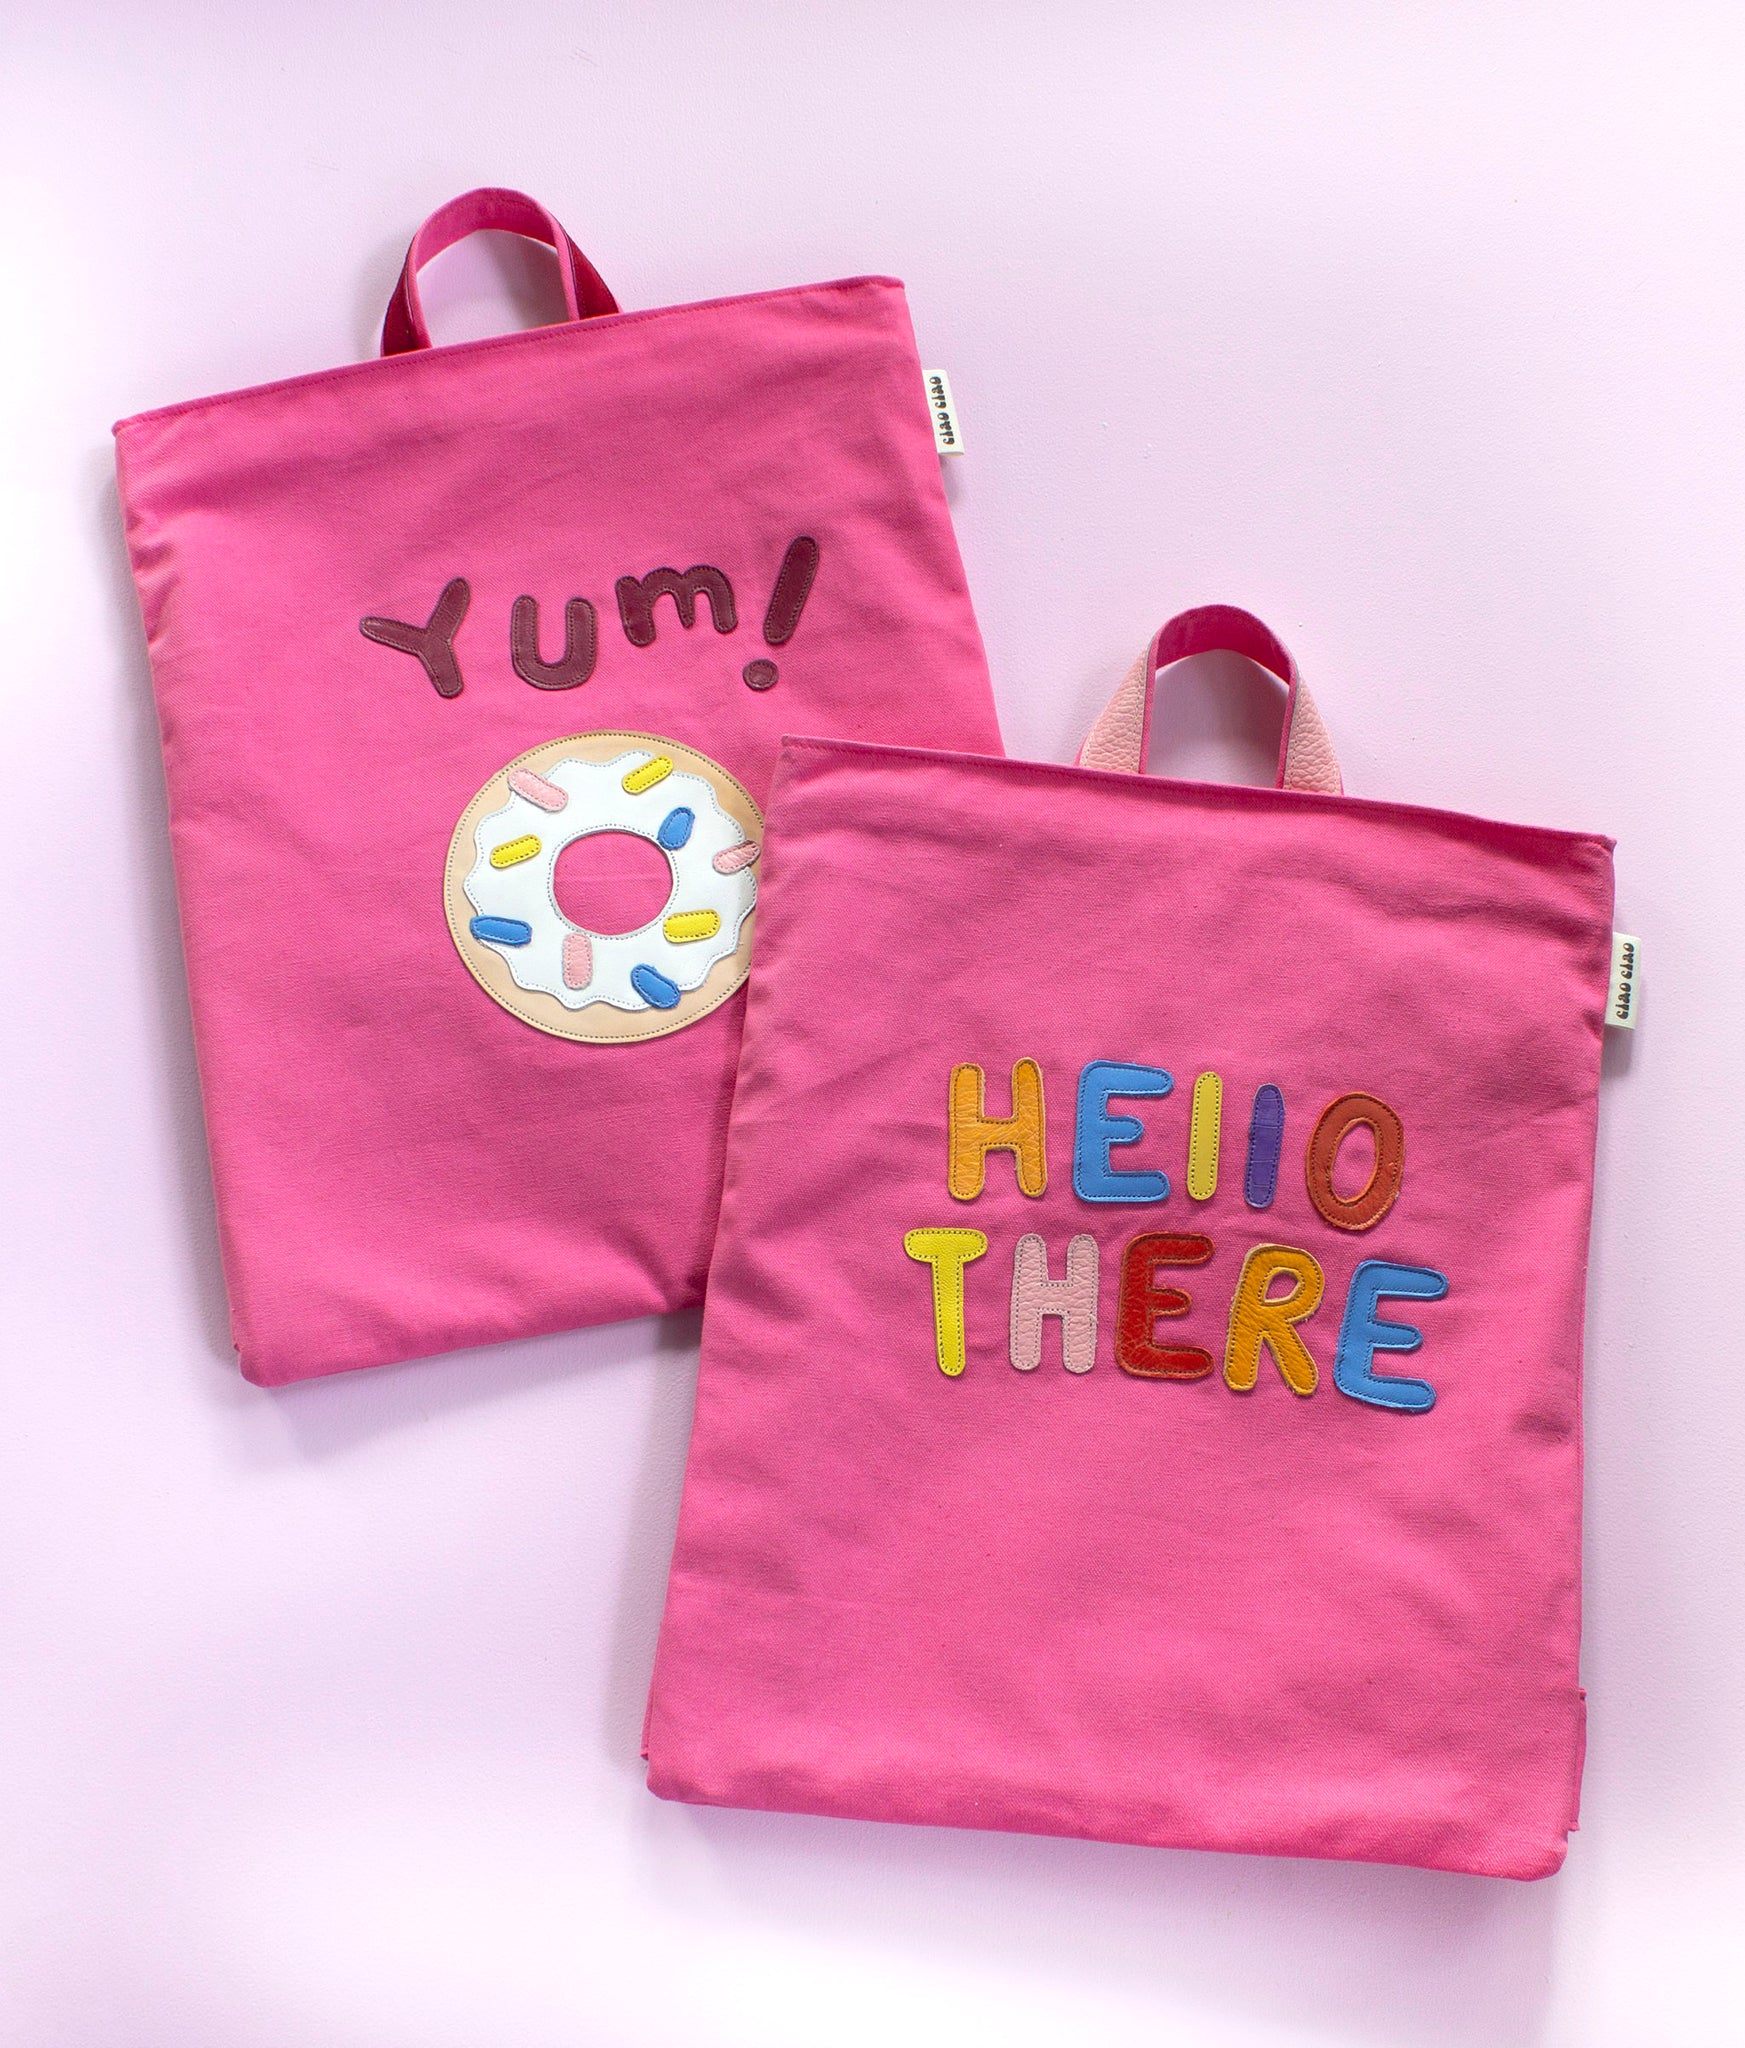 Duo de sacs à dos plat rose appliqués Hello There et Yum! vue de face